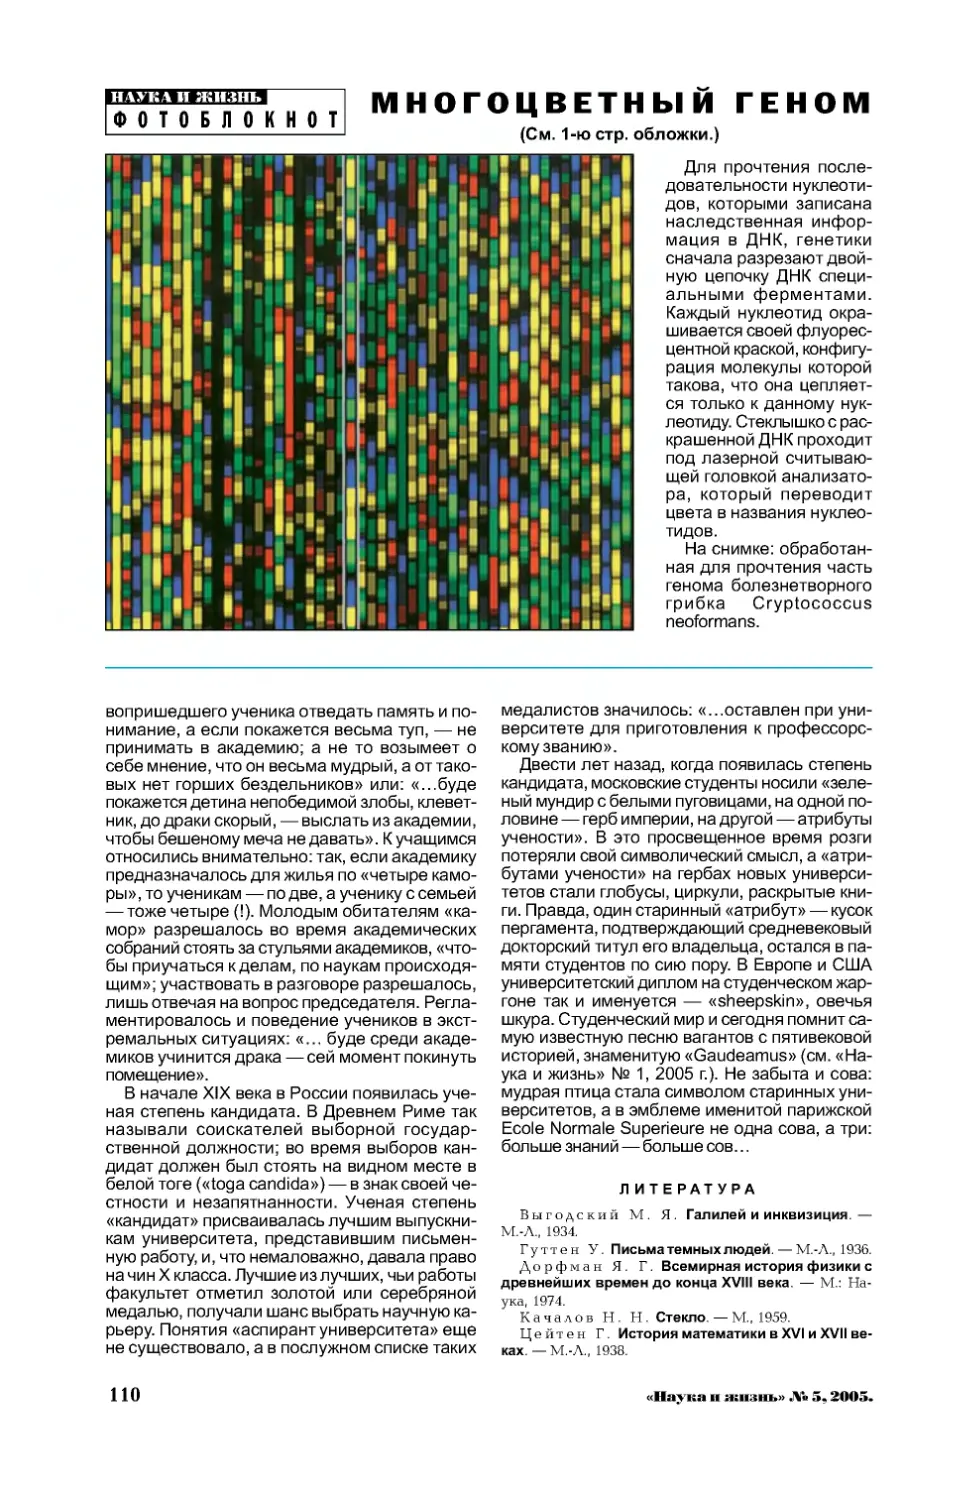 [Фотоблокнот] — Многоцветный геном